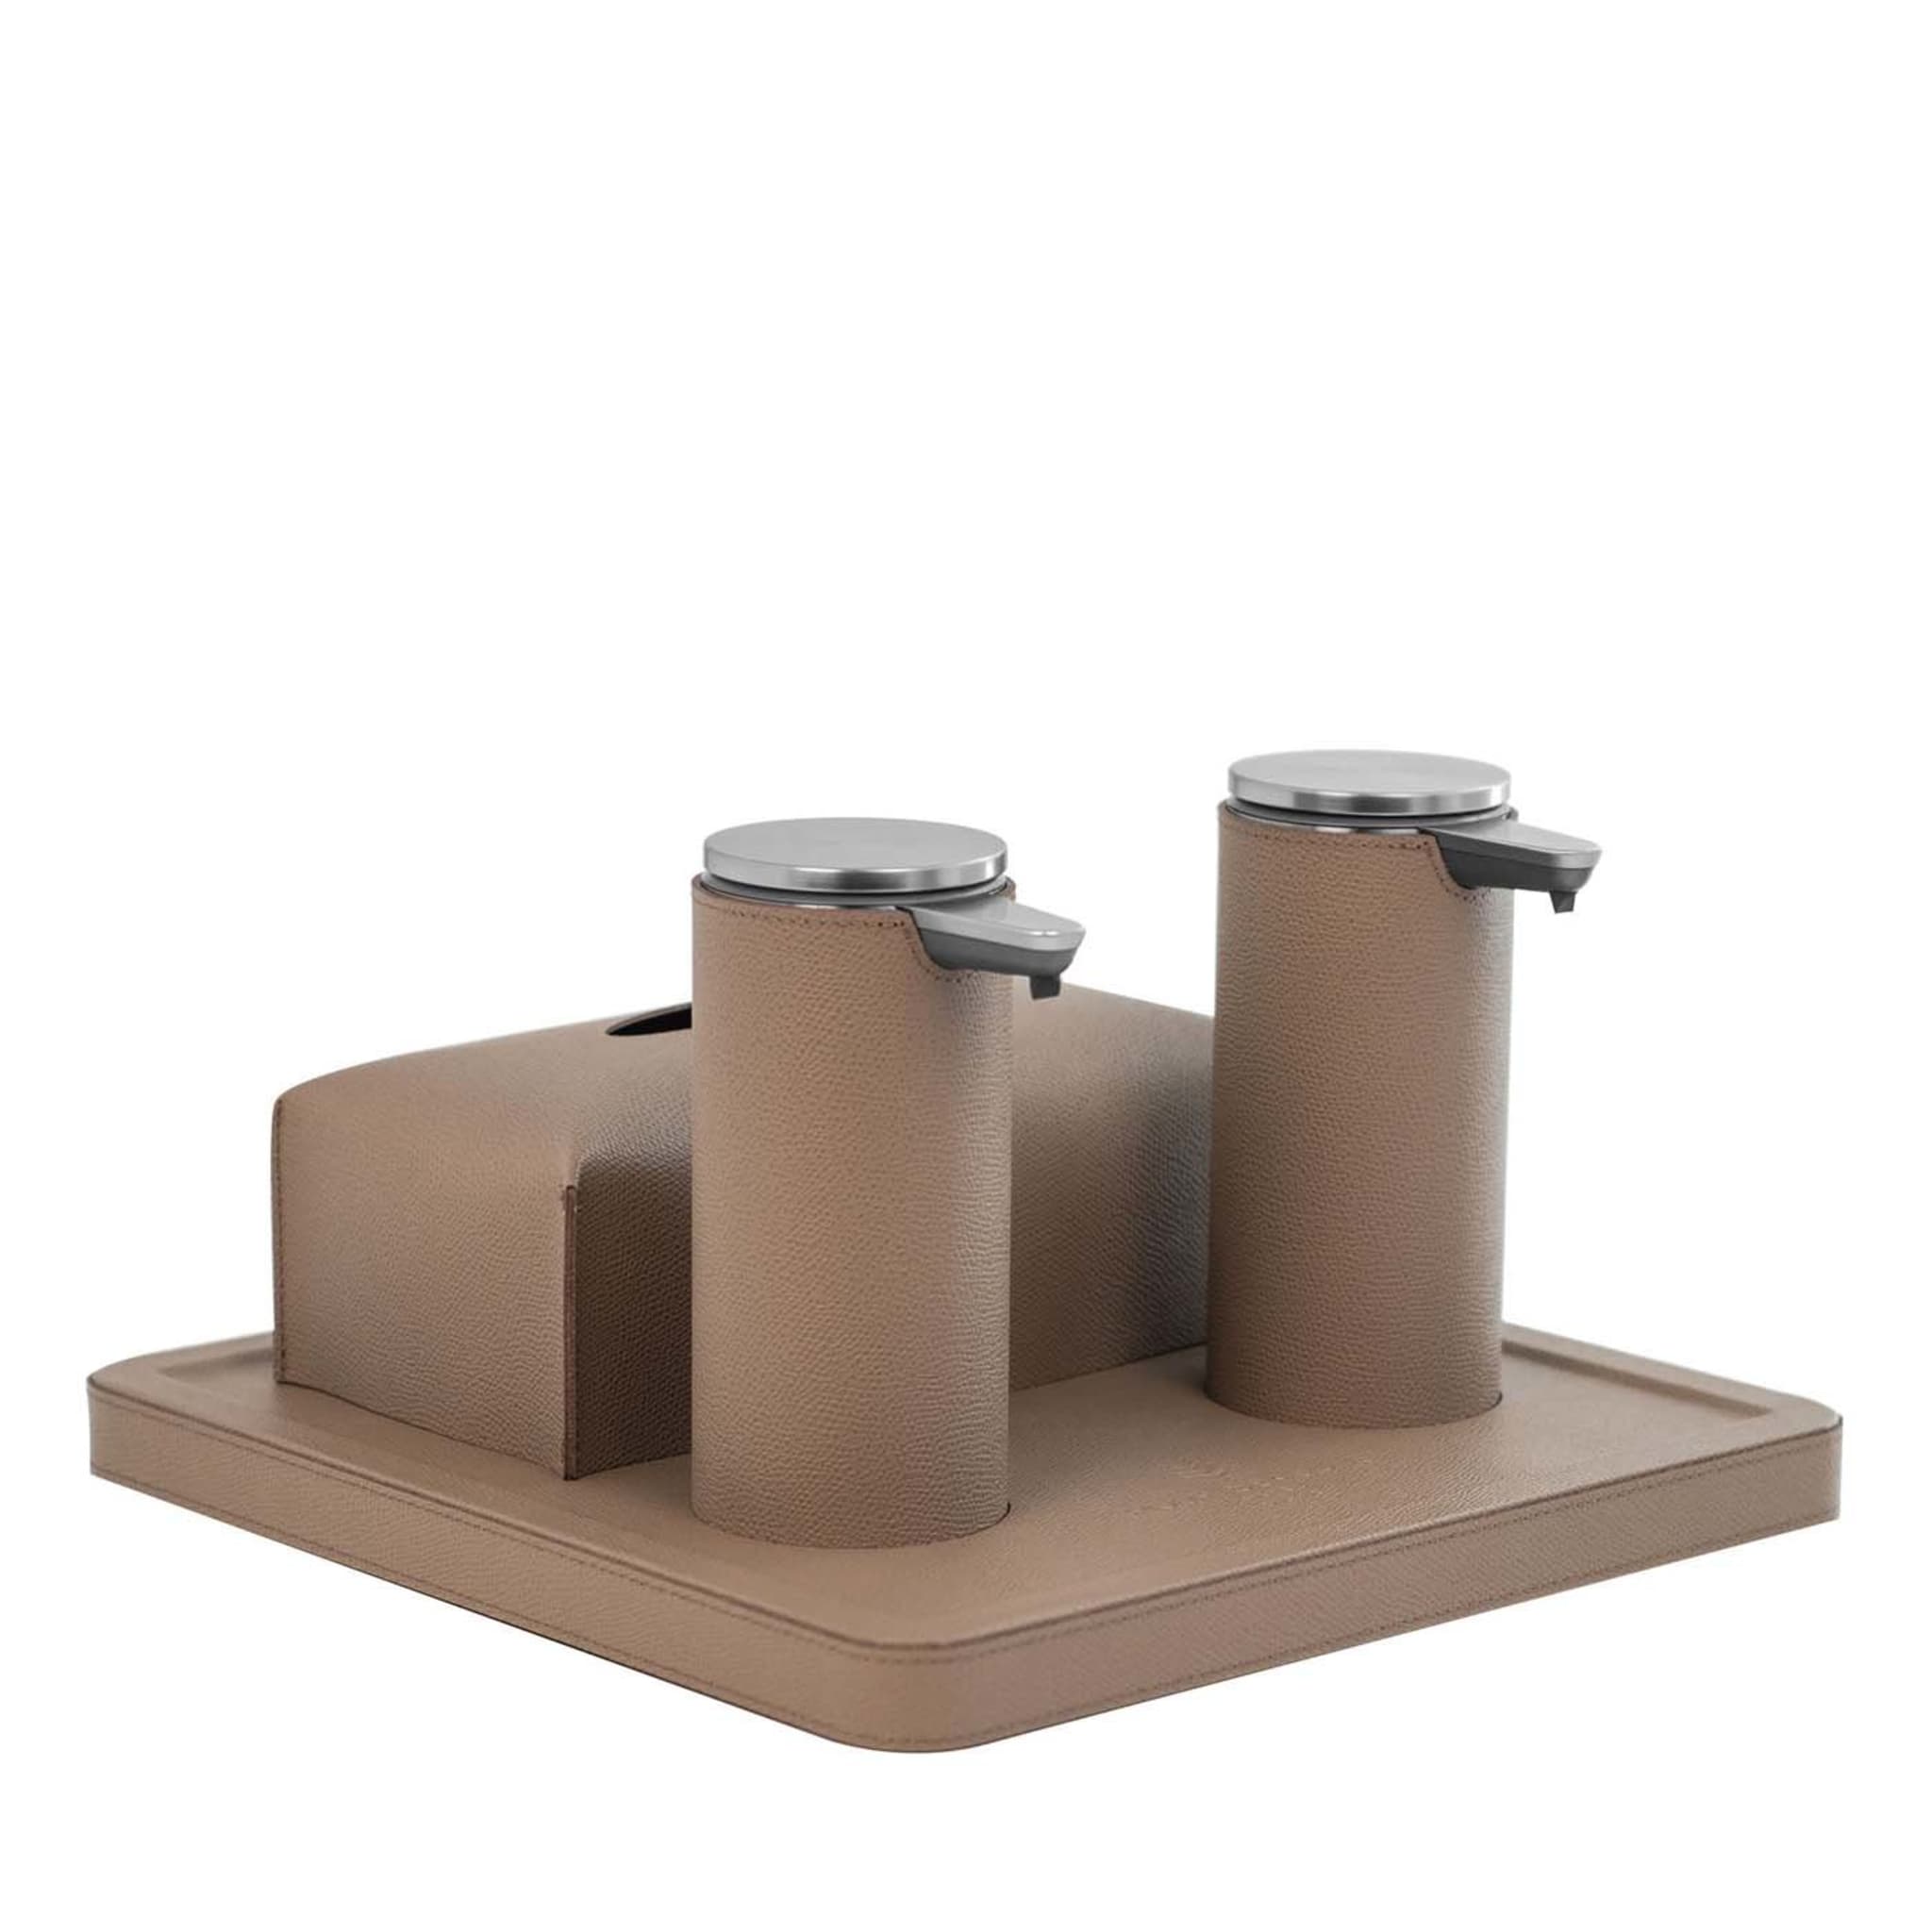 Vassoio in pelle Igea Taupe con 2 dispenser e coperchio per scatola di carta igienica - Vista principale